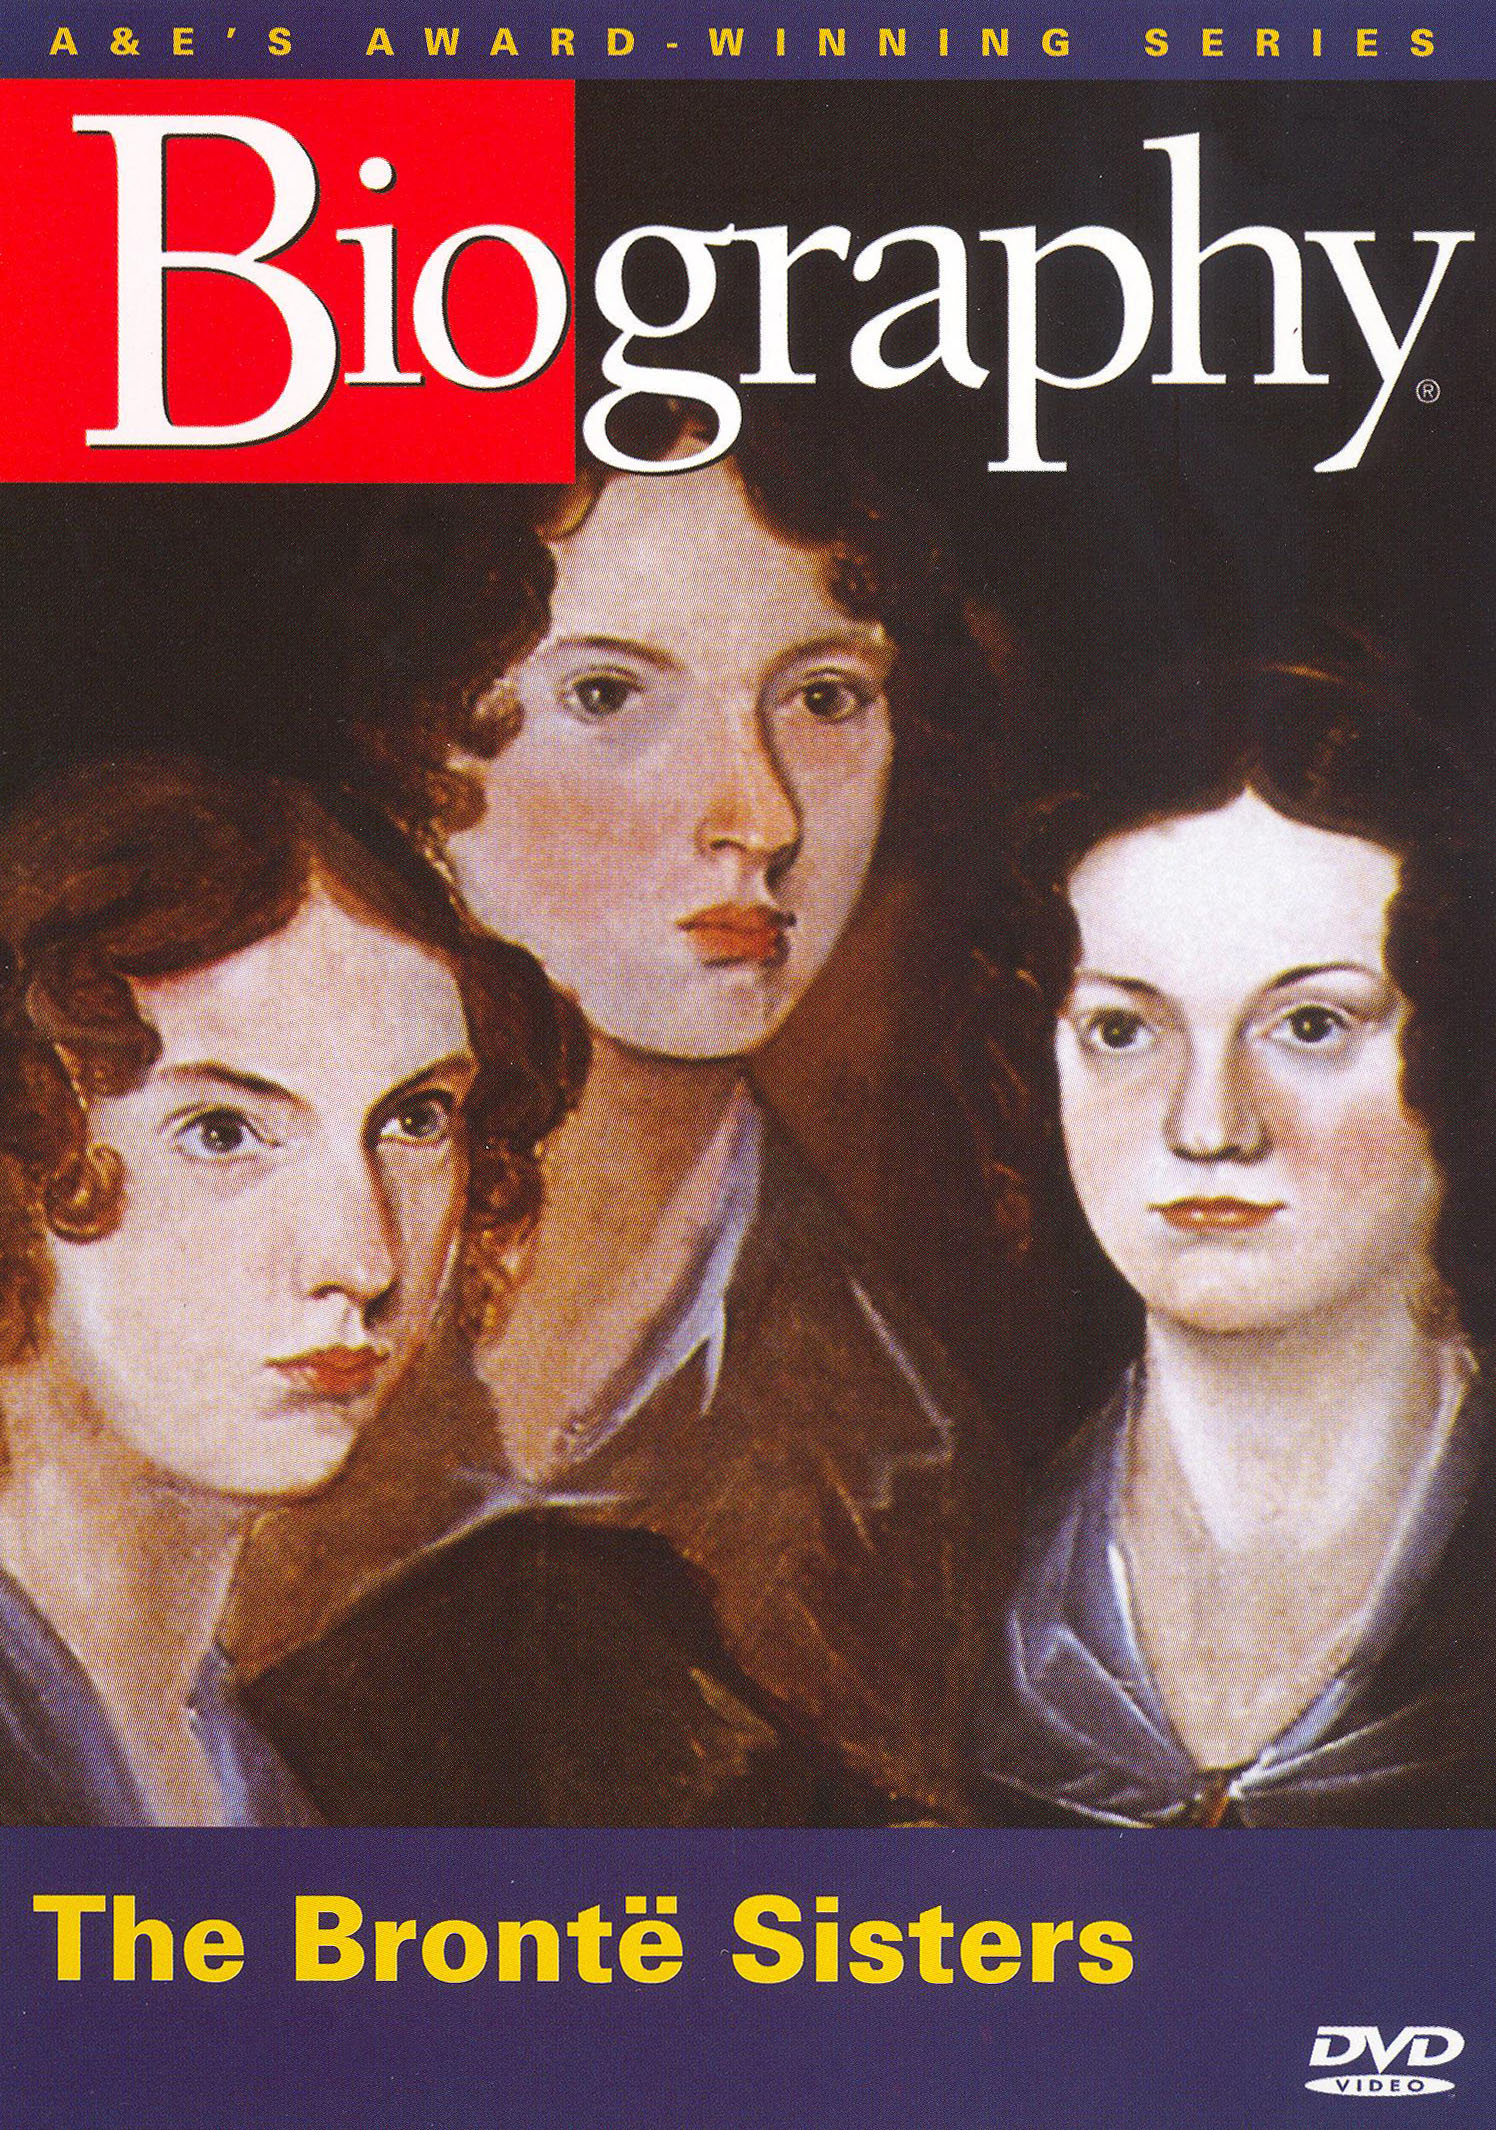 The Brontë Sisters by Catherine Reef